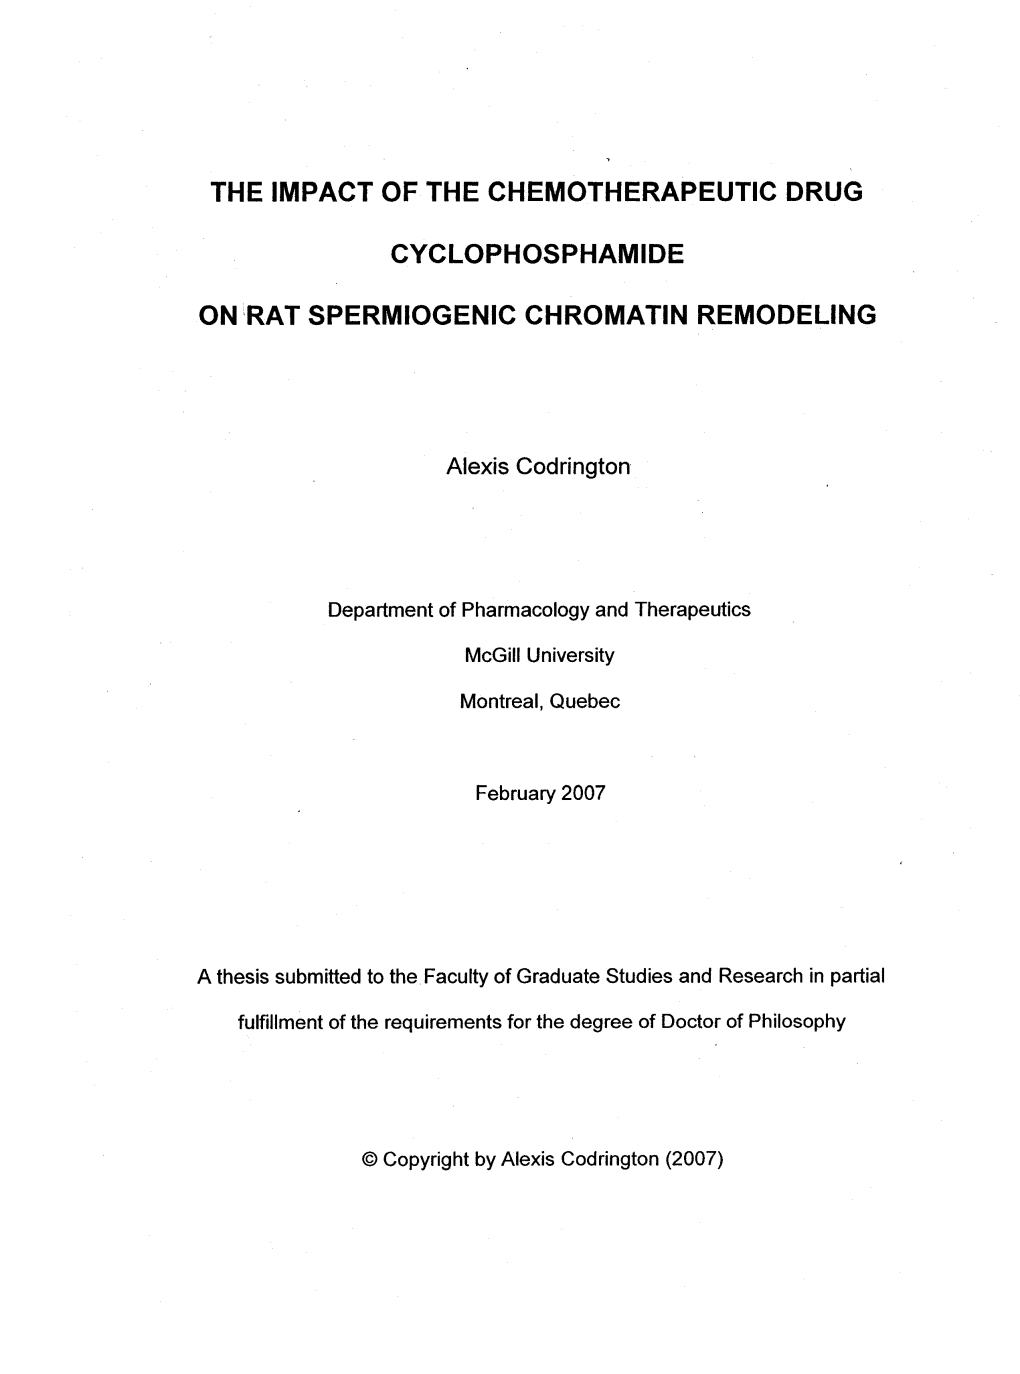 Rat Spermiogenic Chromatin Remodeling